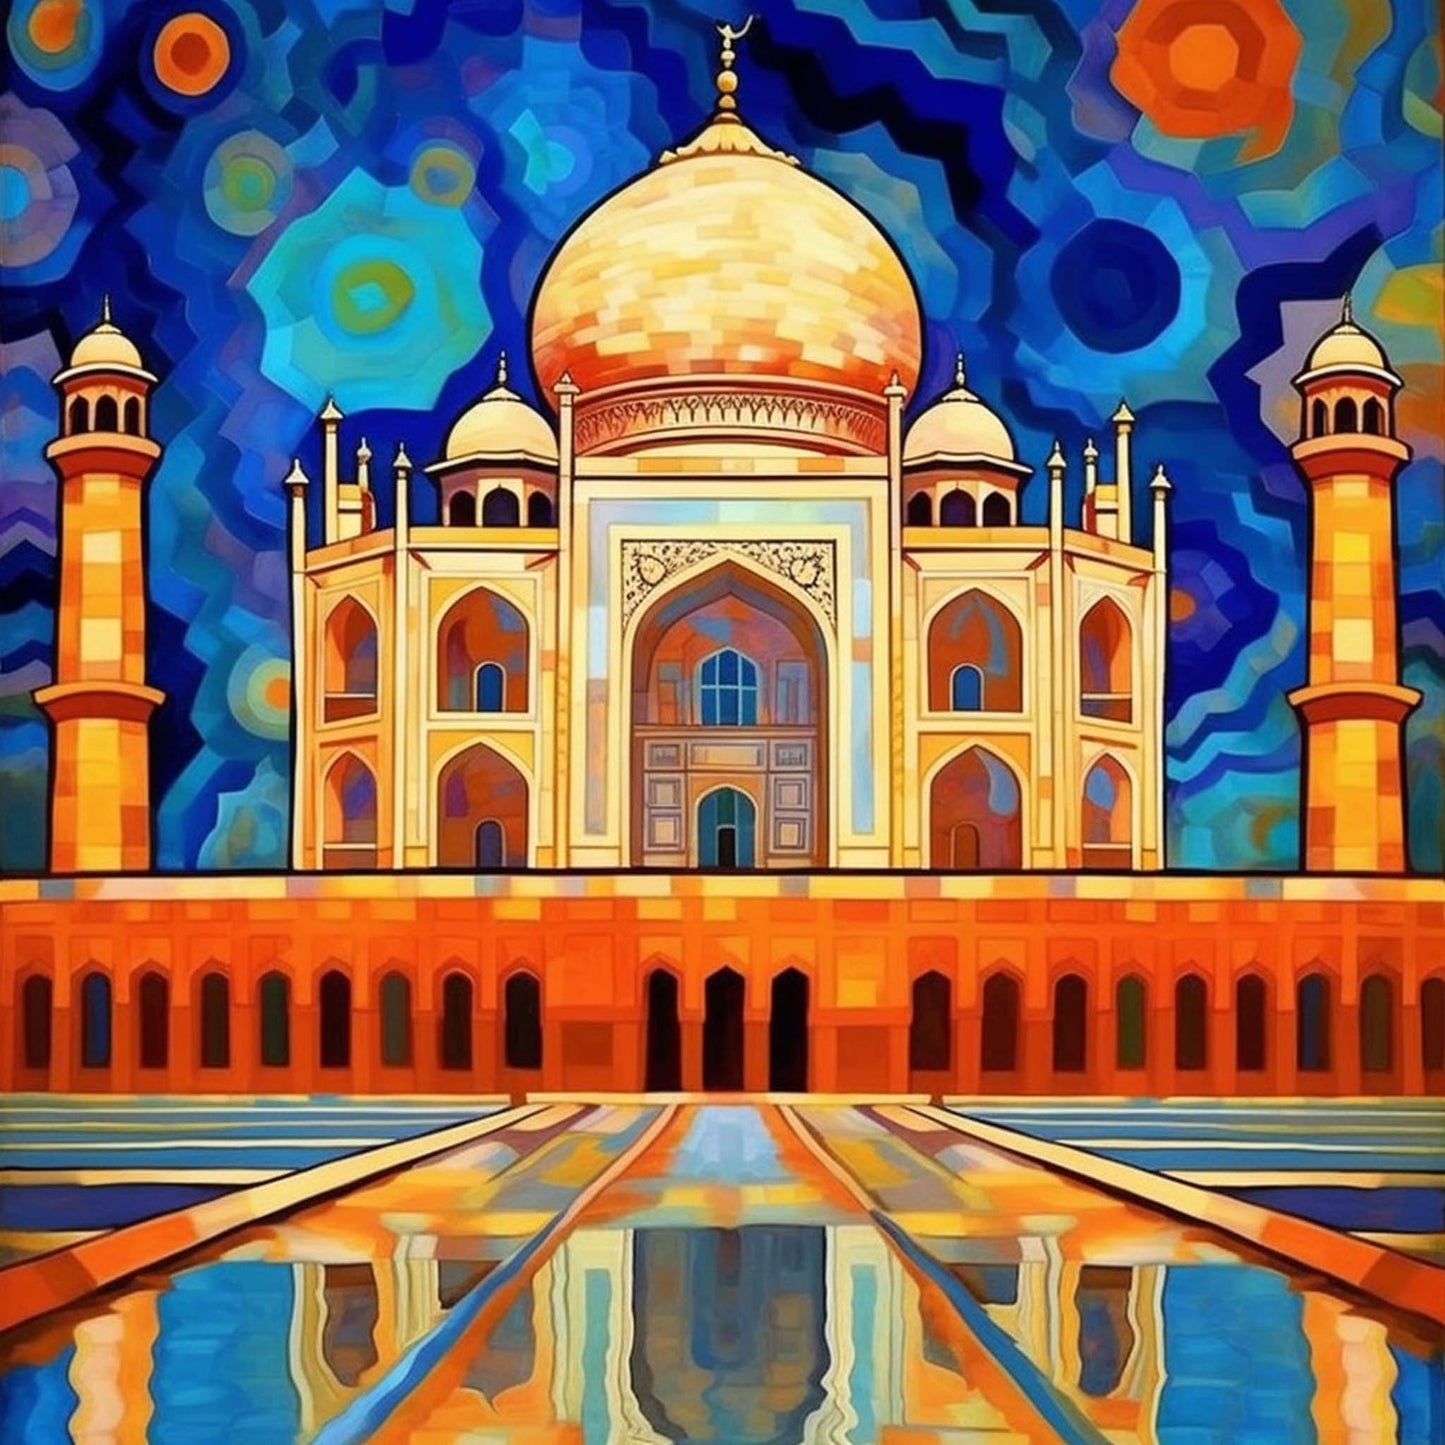 Urbanisto - Taj Mahal - Wandbild in der Stilrichtung des Expressionismus